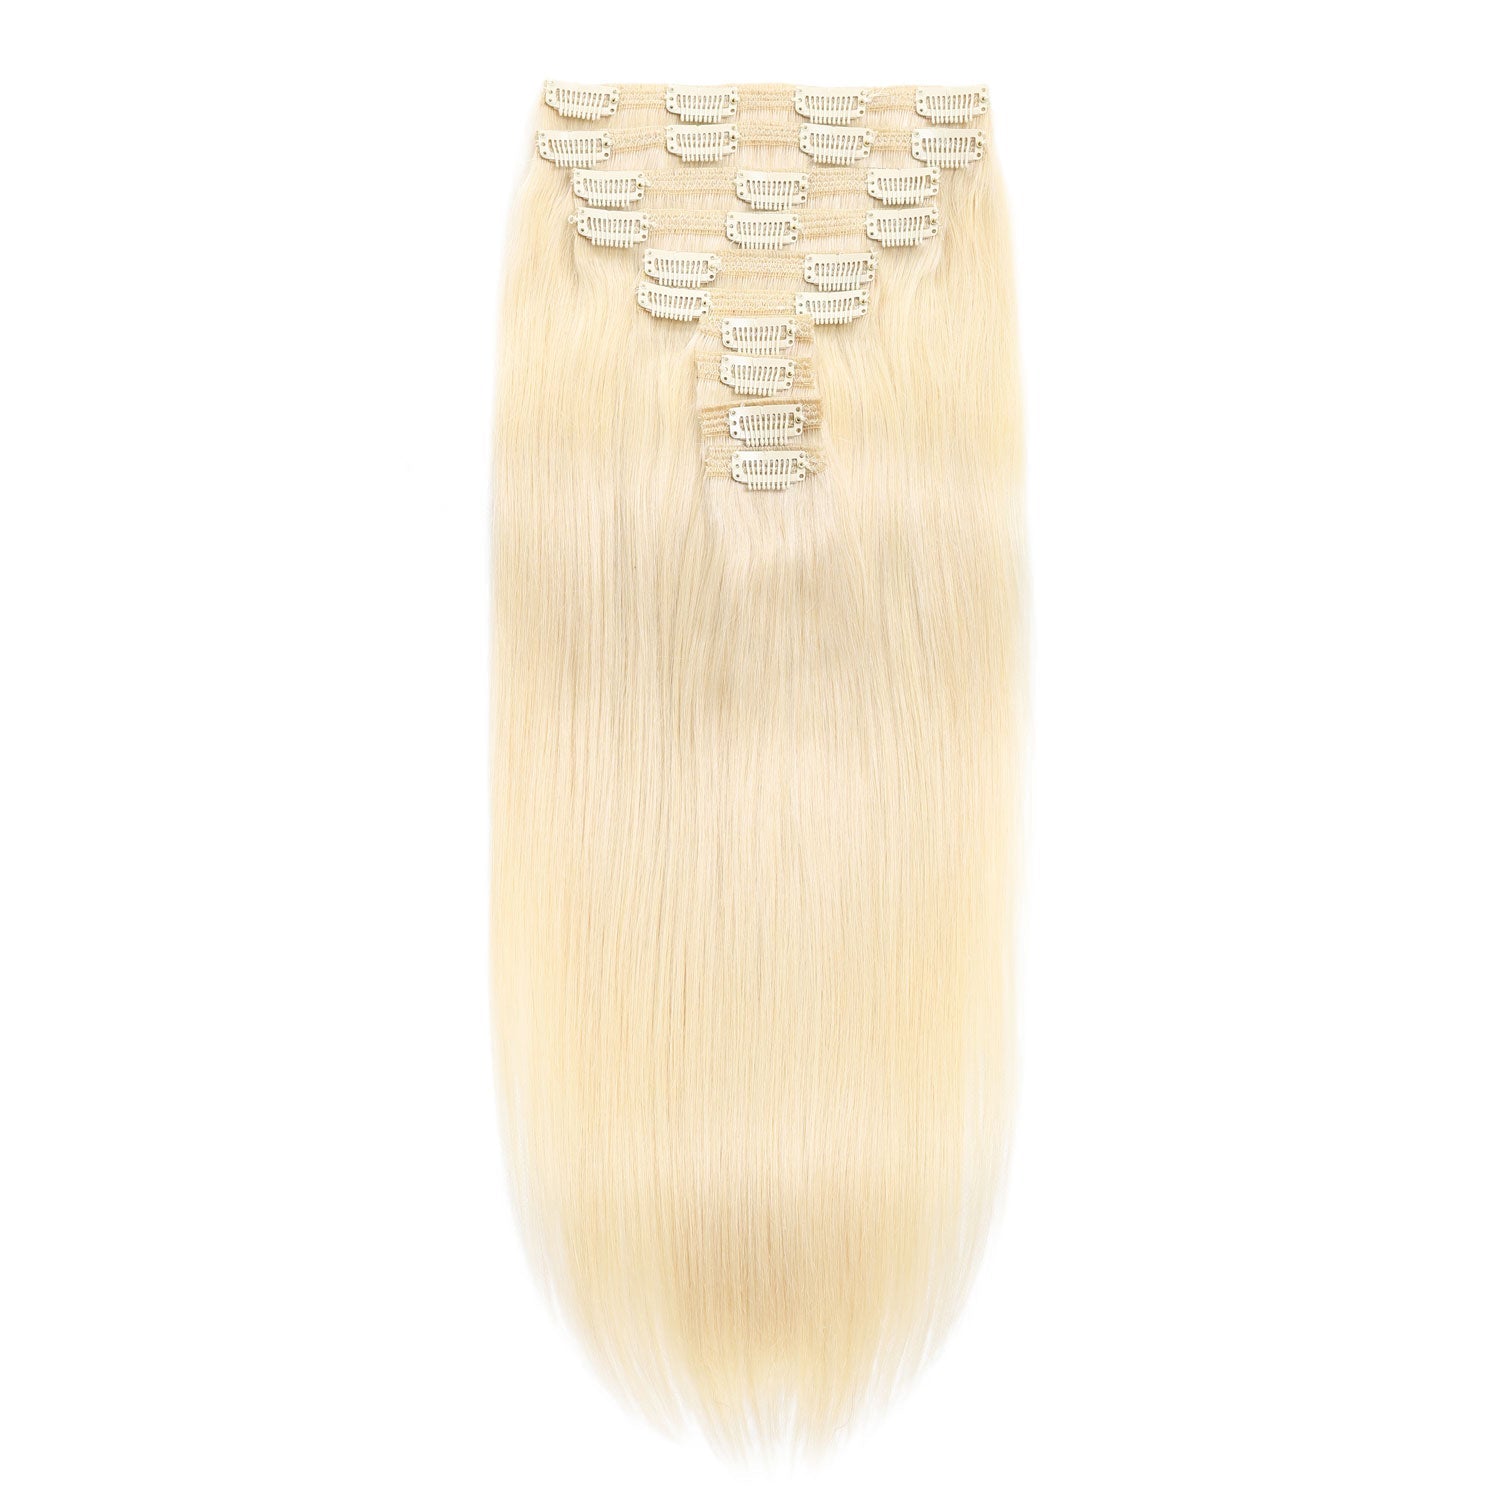 Clip In Hair Extensions 24" #613 Bleach Blonde